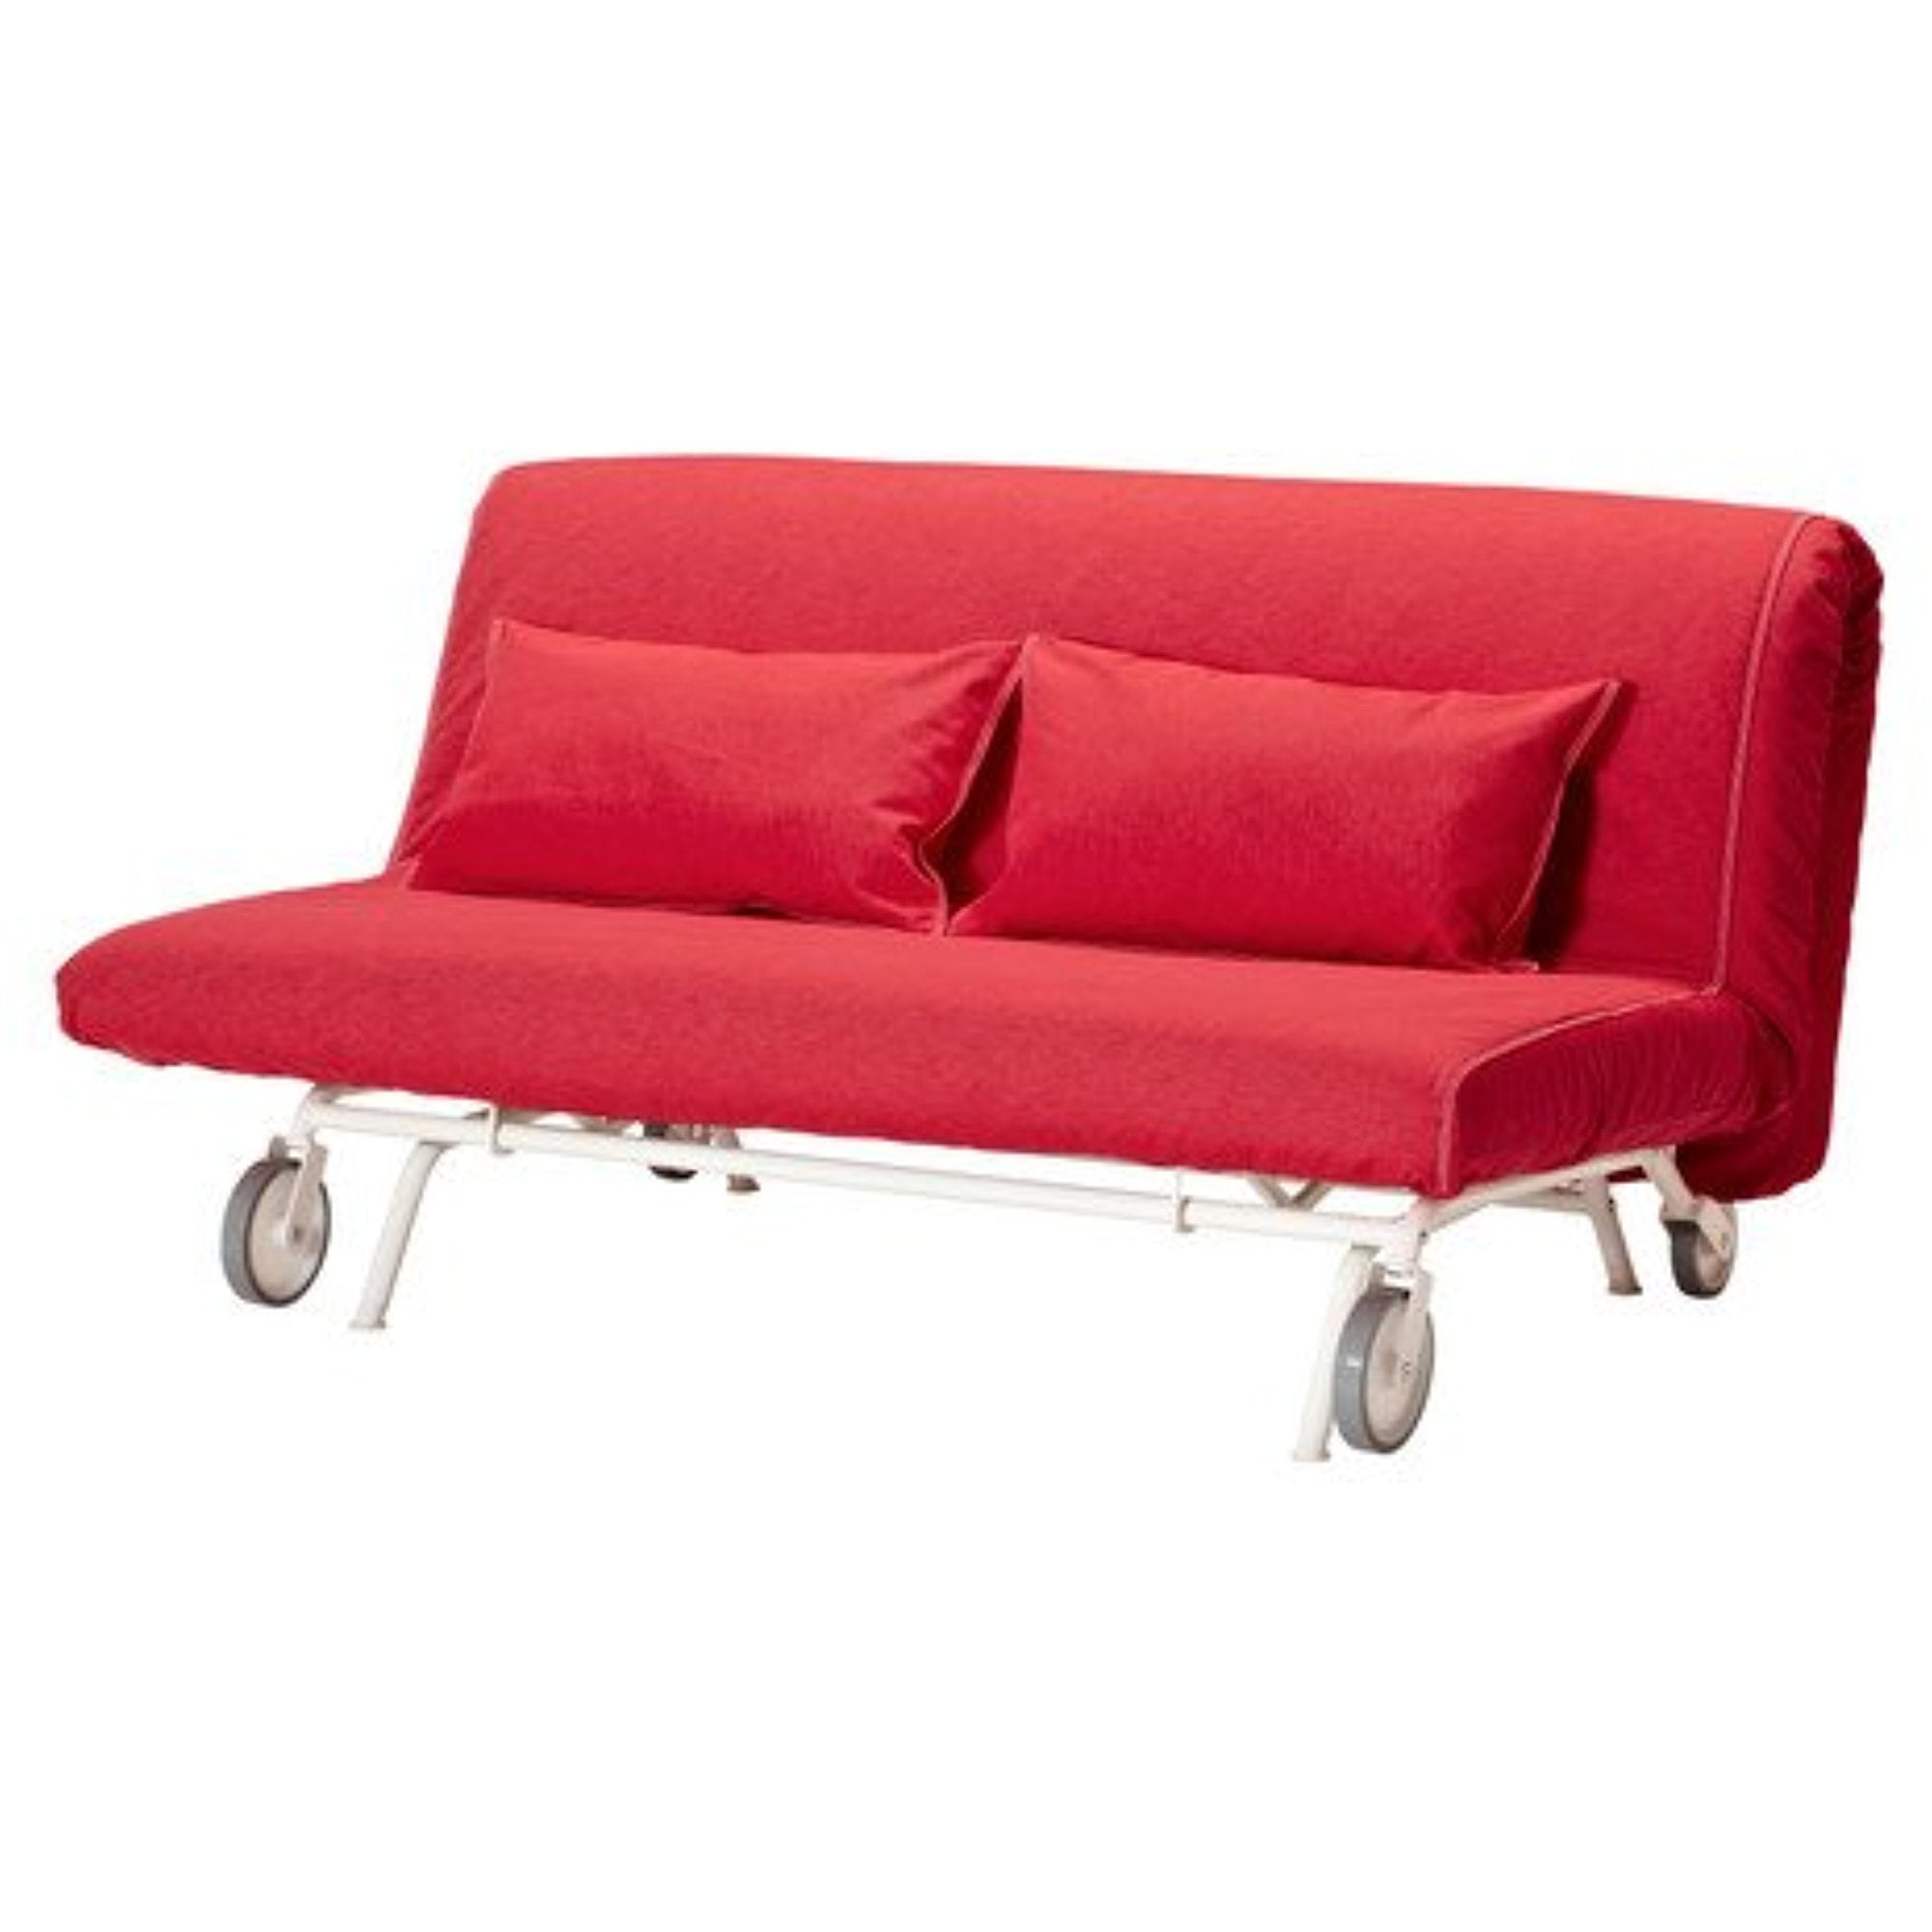 Aan boord Plantkunde etiquette Ikea Sleeper sofa, Vansta red 122018.231414.2214 - Walmart.com